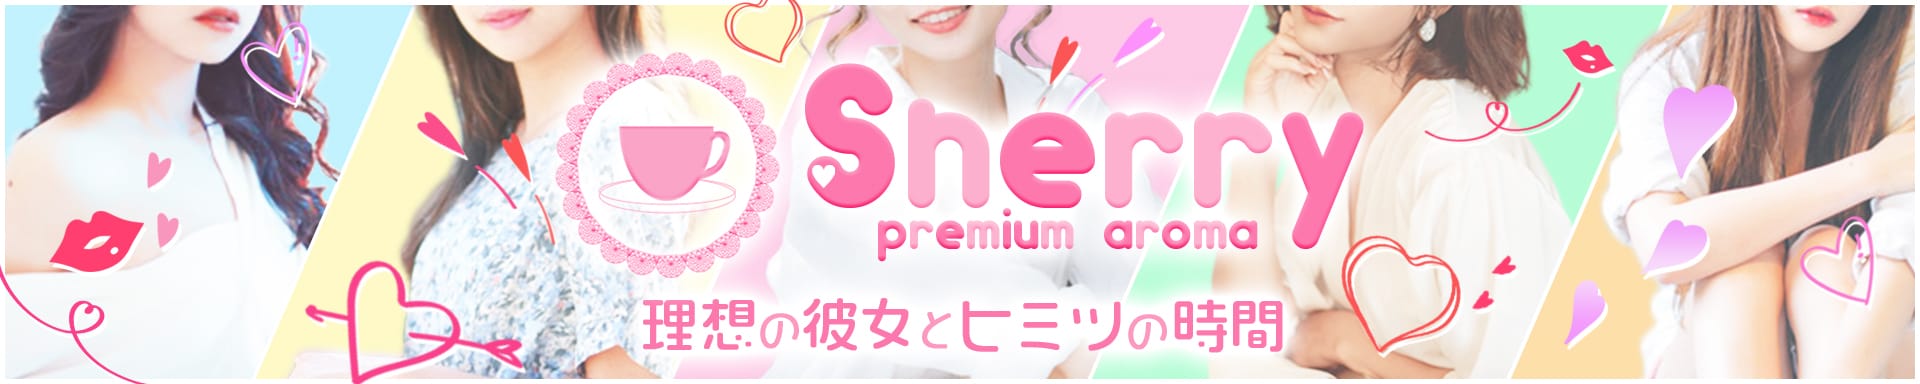 シェリー【premium aroma】